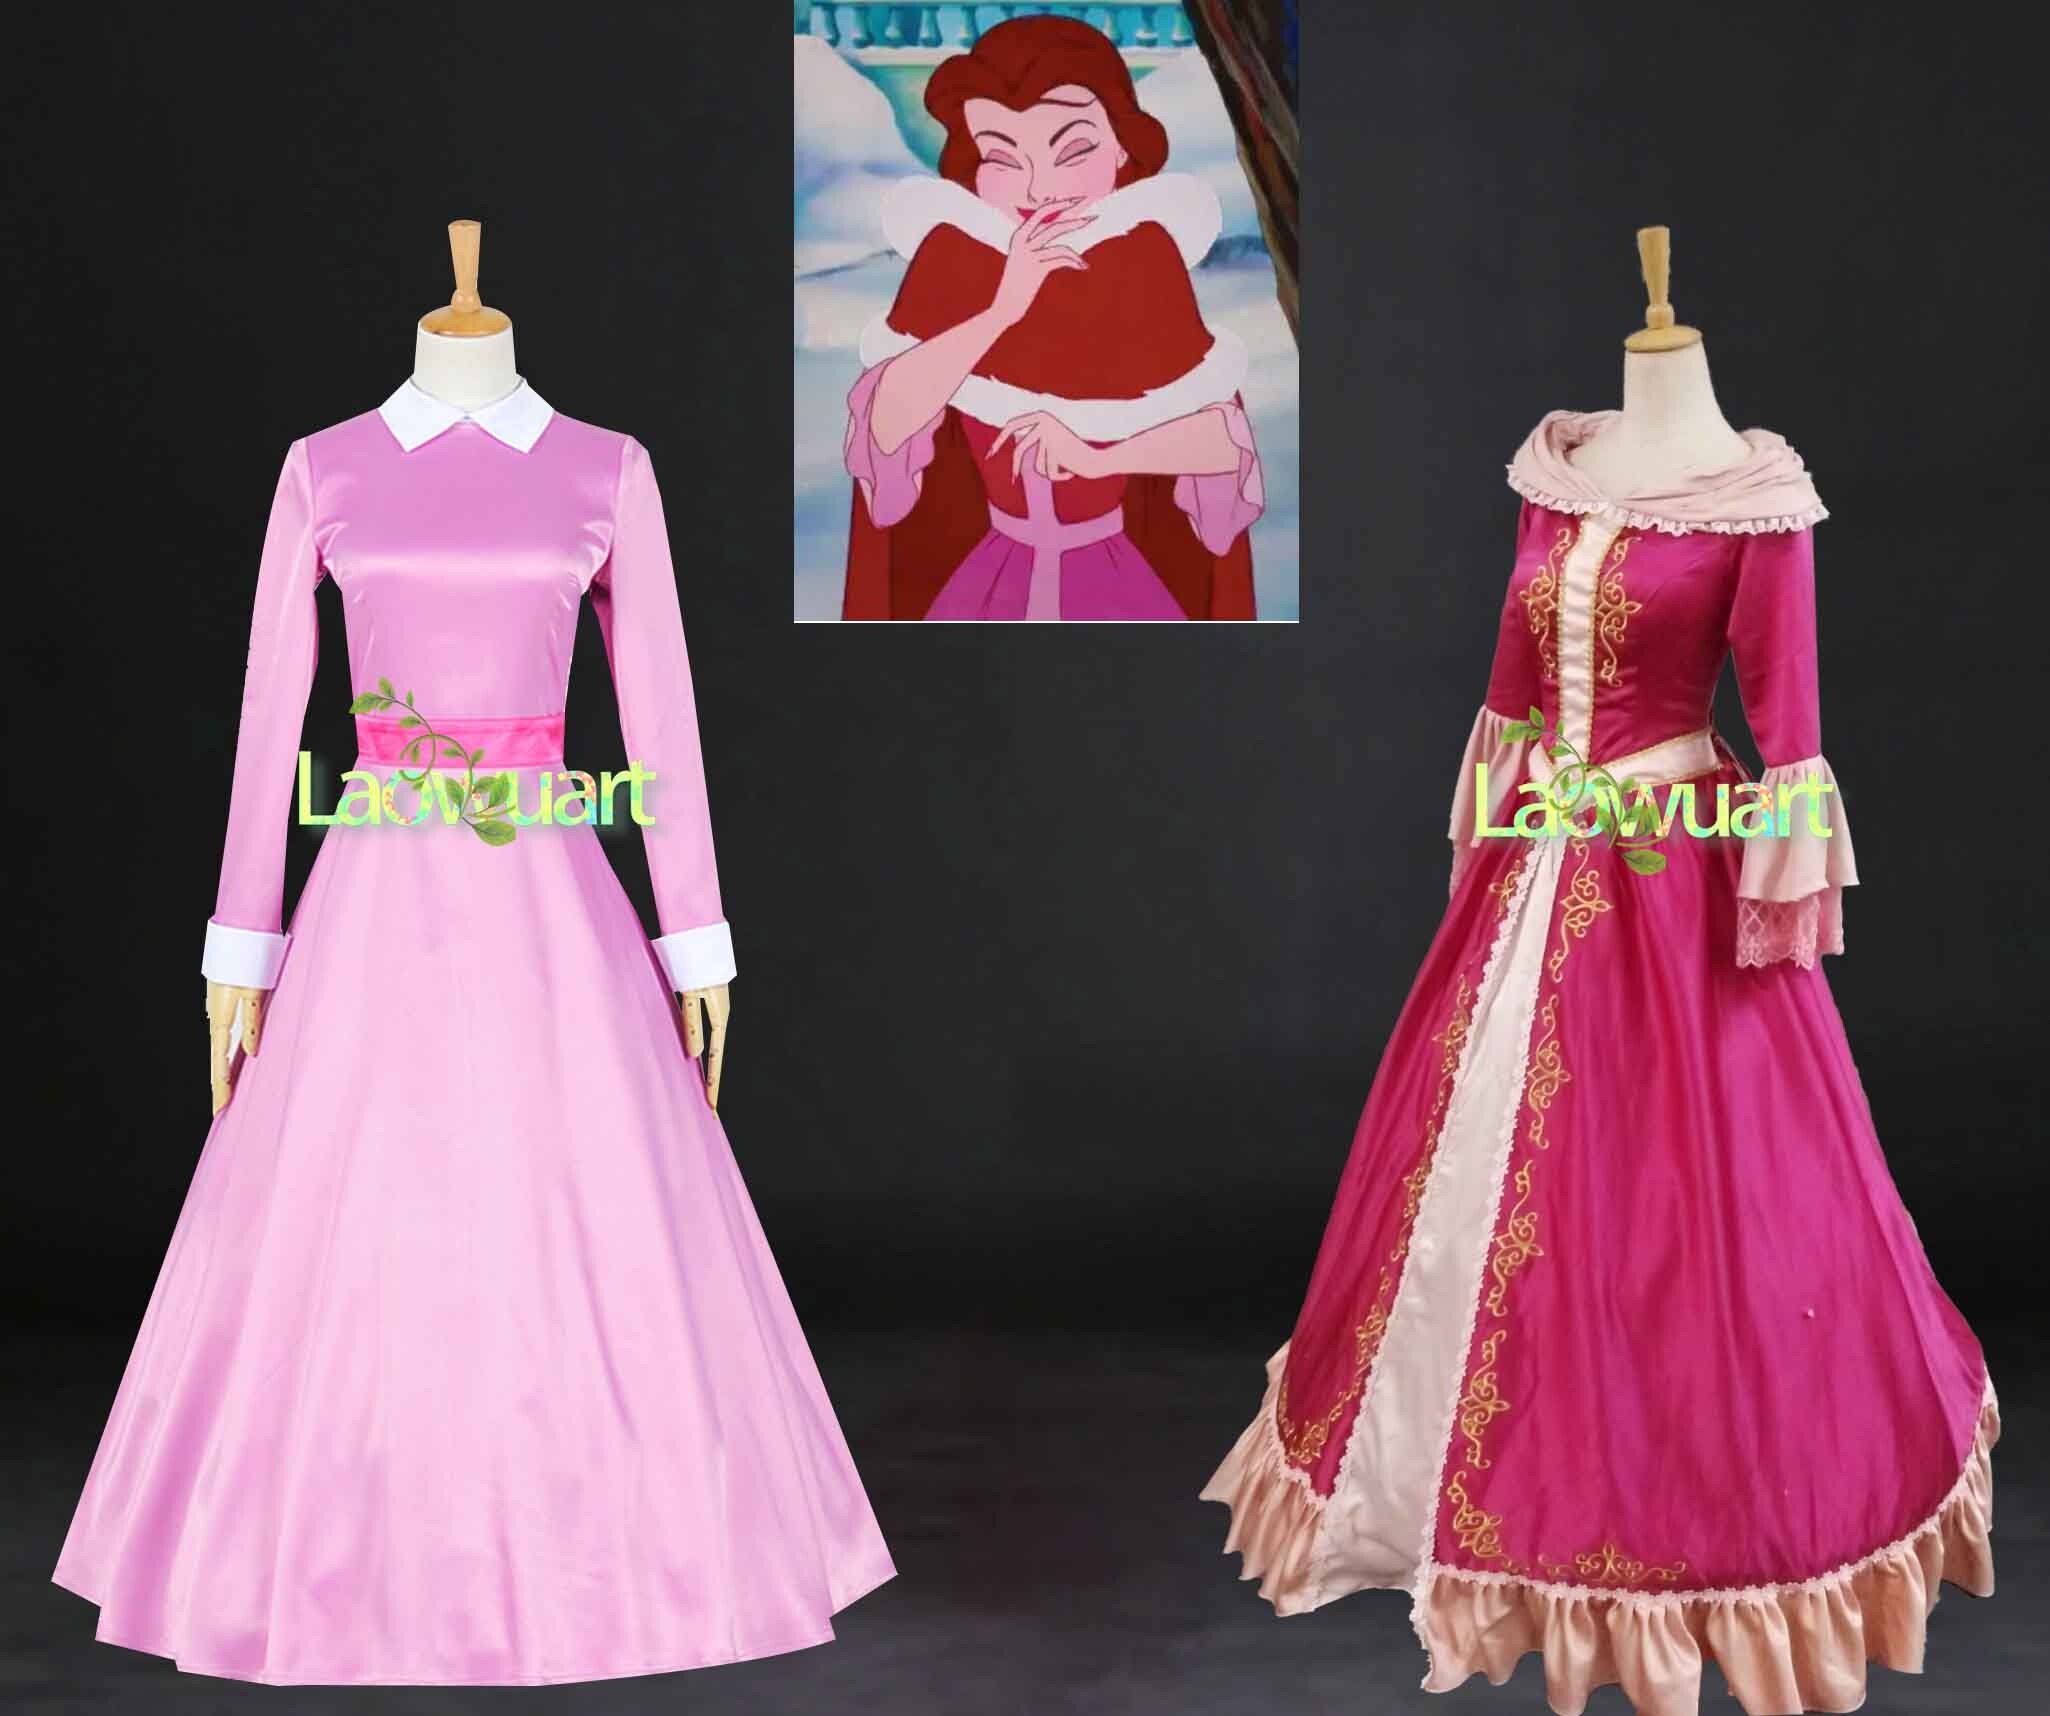 Belle's Dress Costume 